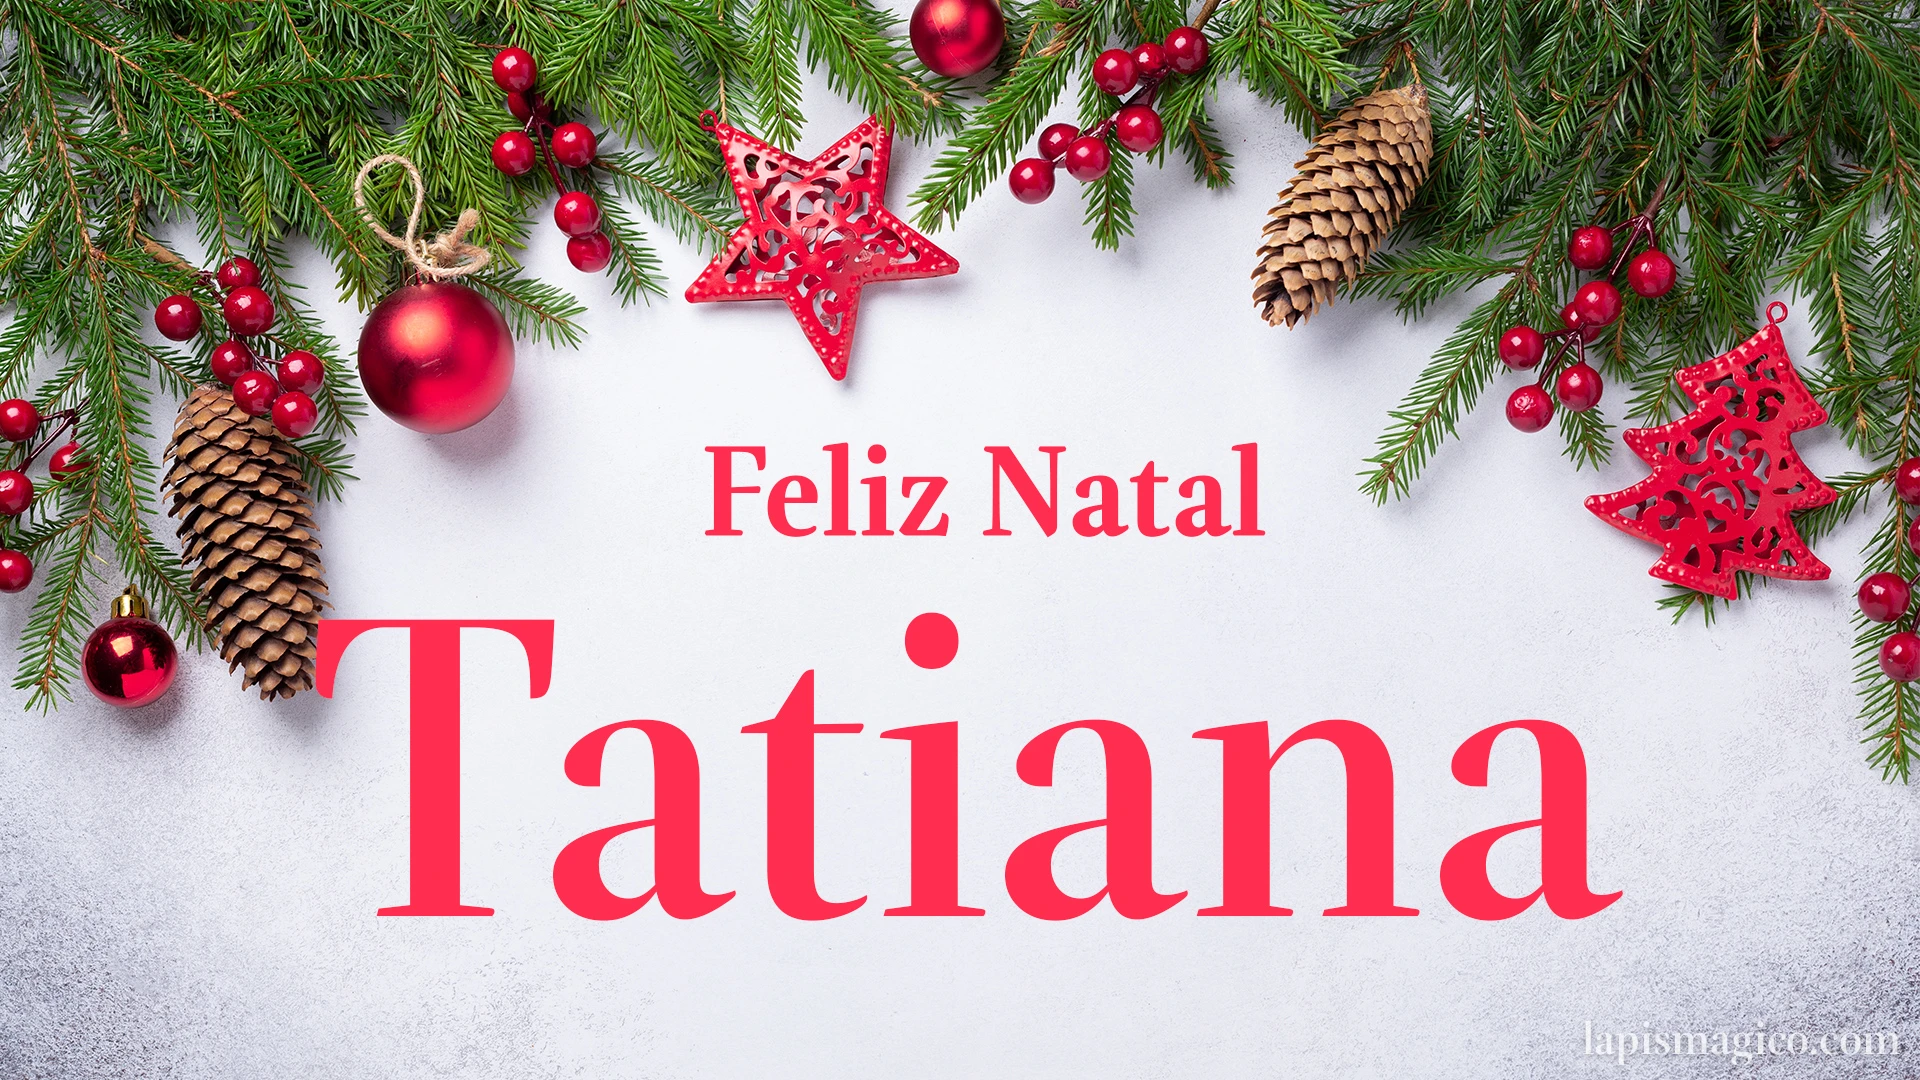 Oh Tatiana, cinco postais de Feliz Natal Postal com o teu nome